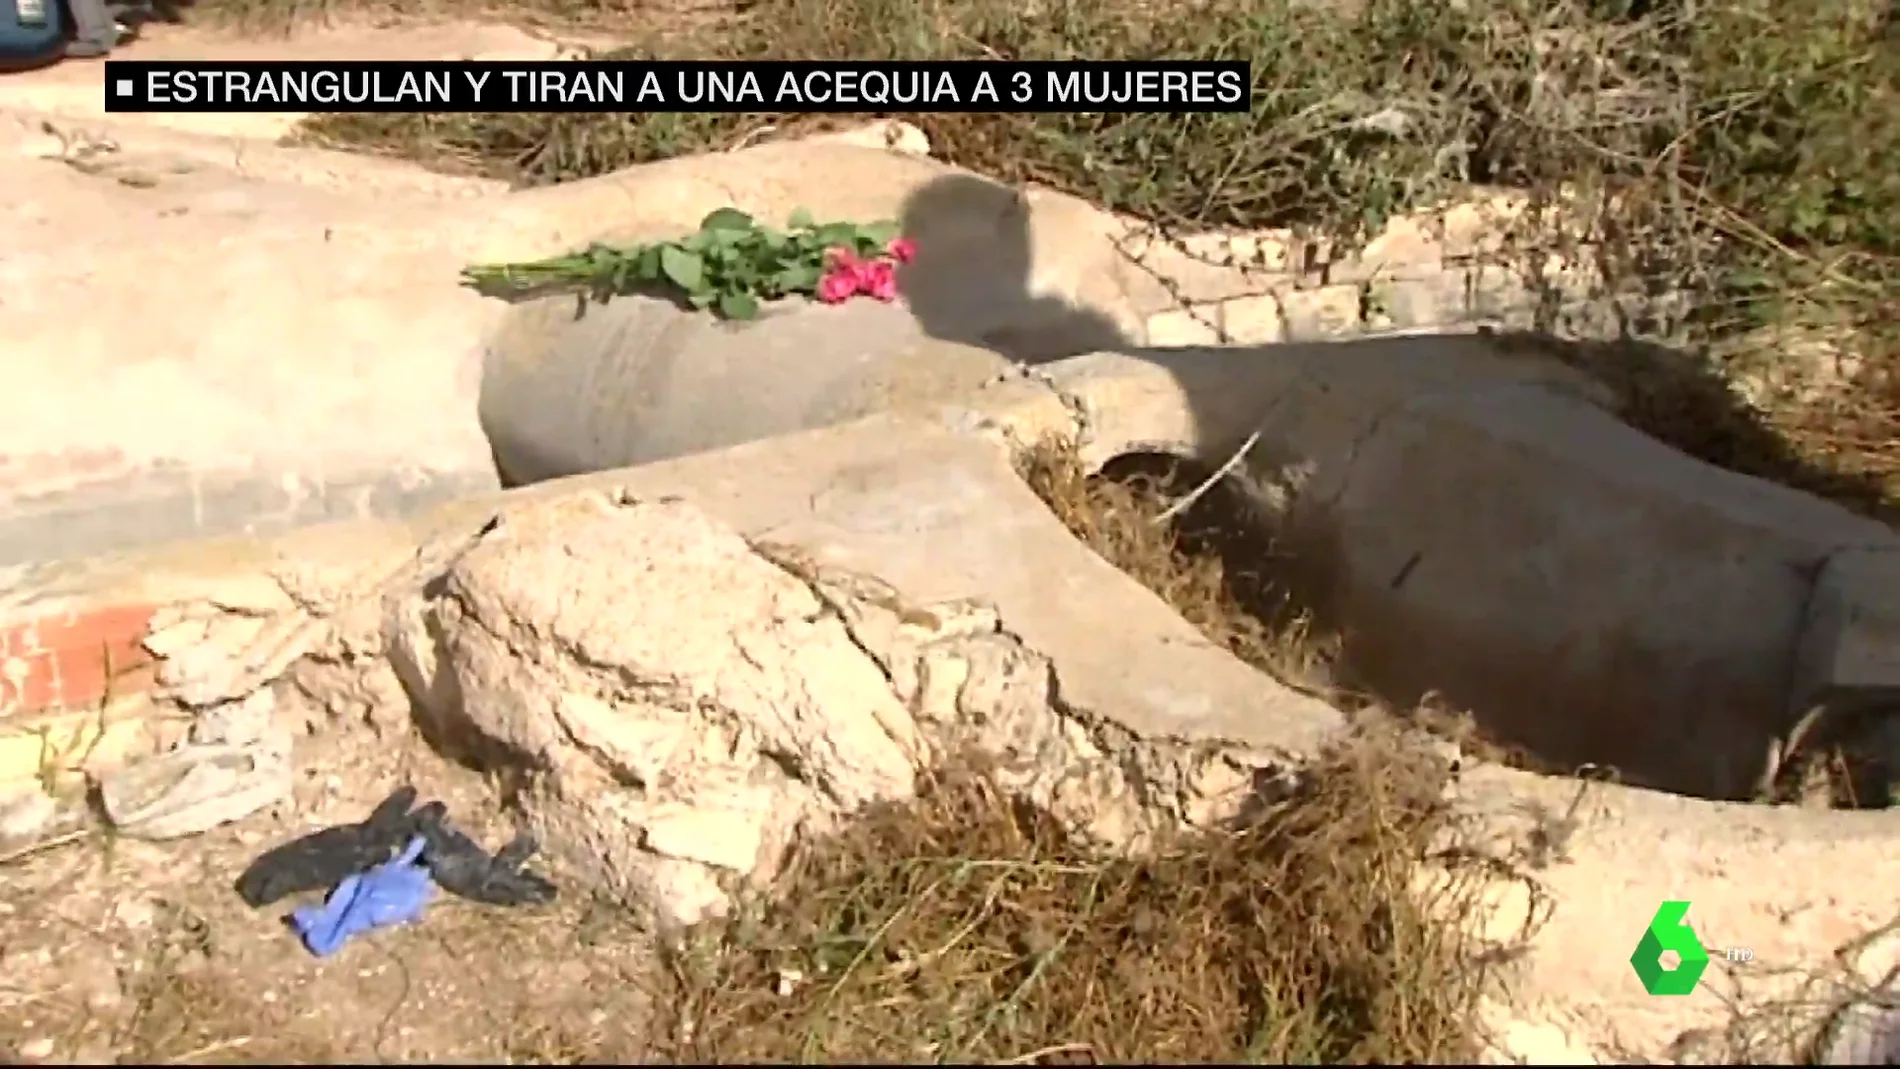 Investigan tres asesinatos similares en la Comunitat Valenciana: tres mujeres ahogadas en una acequia